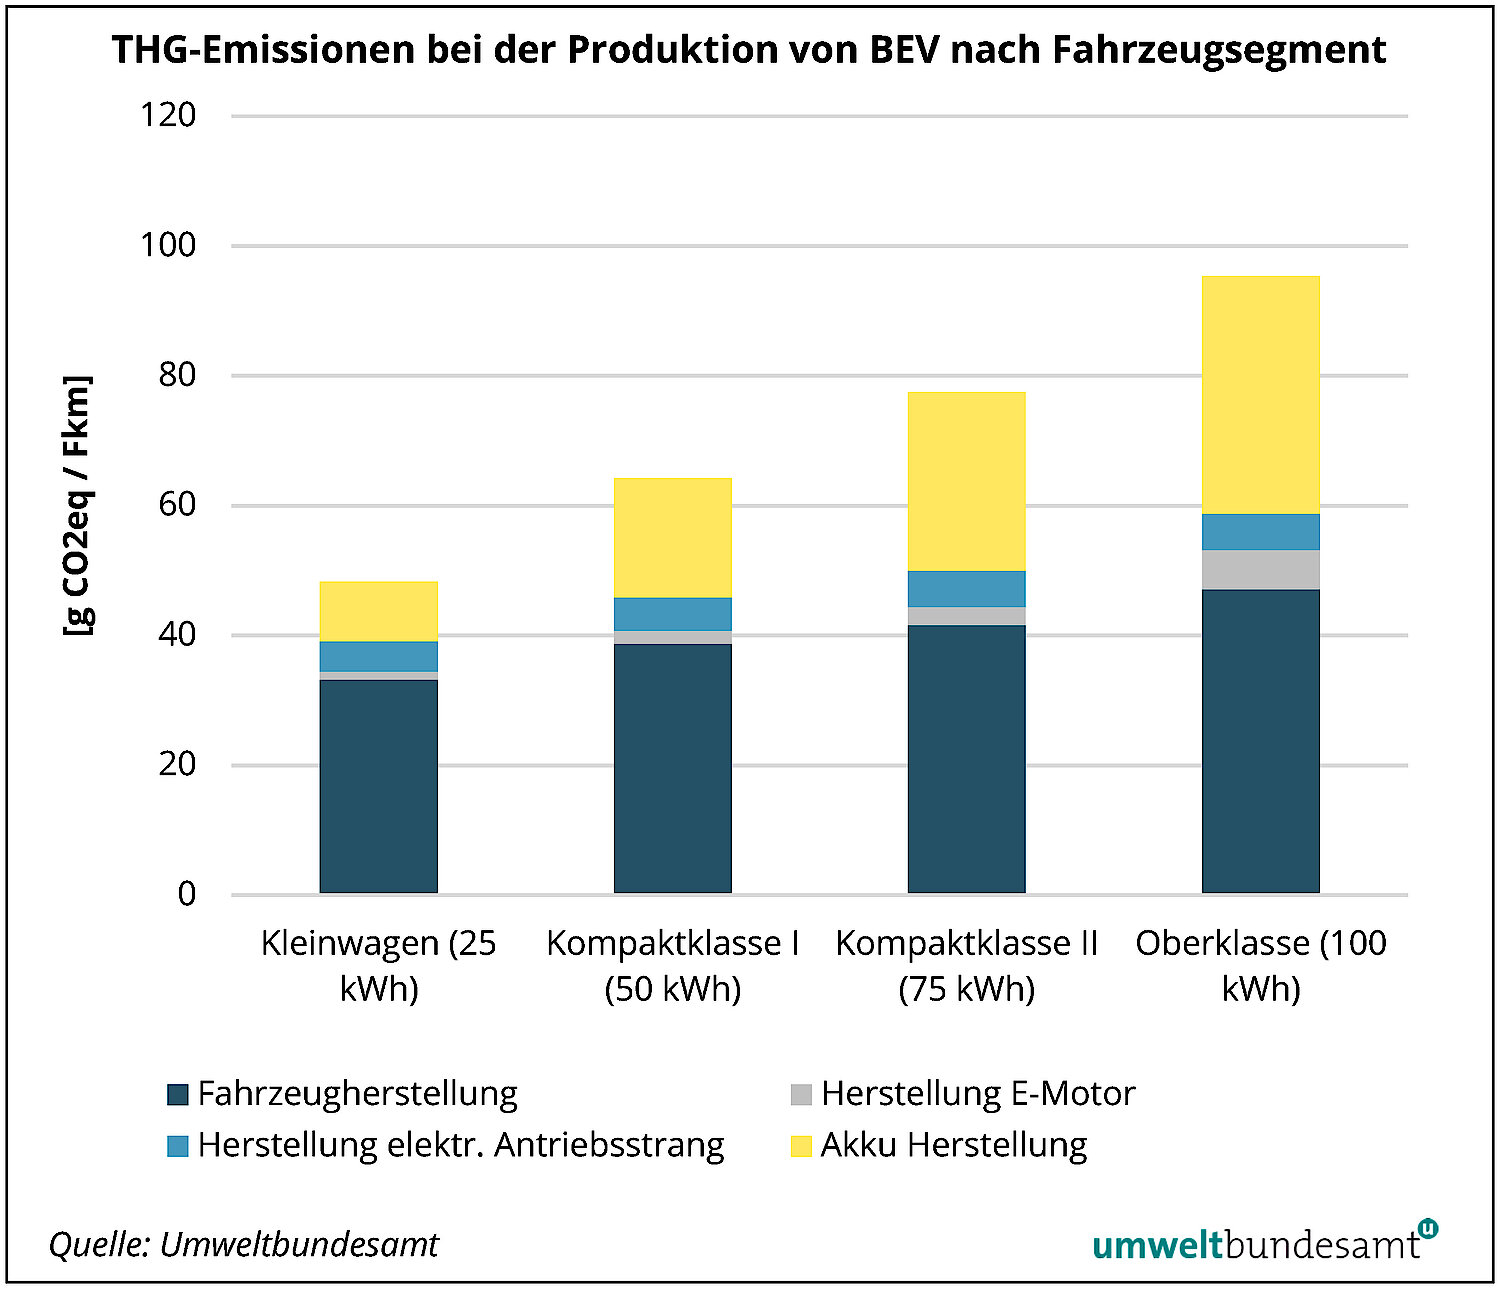 Treibhausgas-Emissionen bei der Produktion von batteriebetriebenen Fahrzeugen nach Fahrzeugsegment